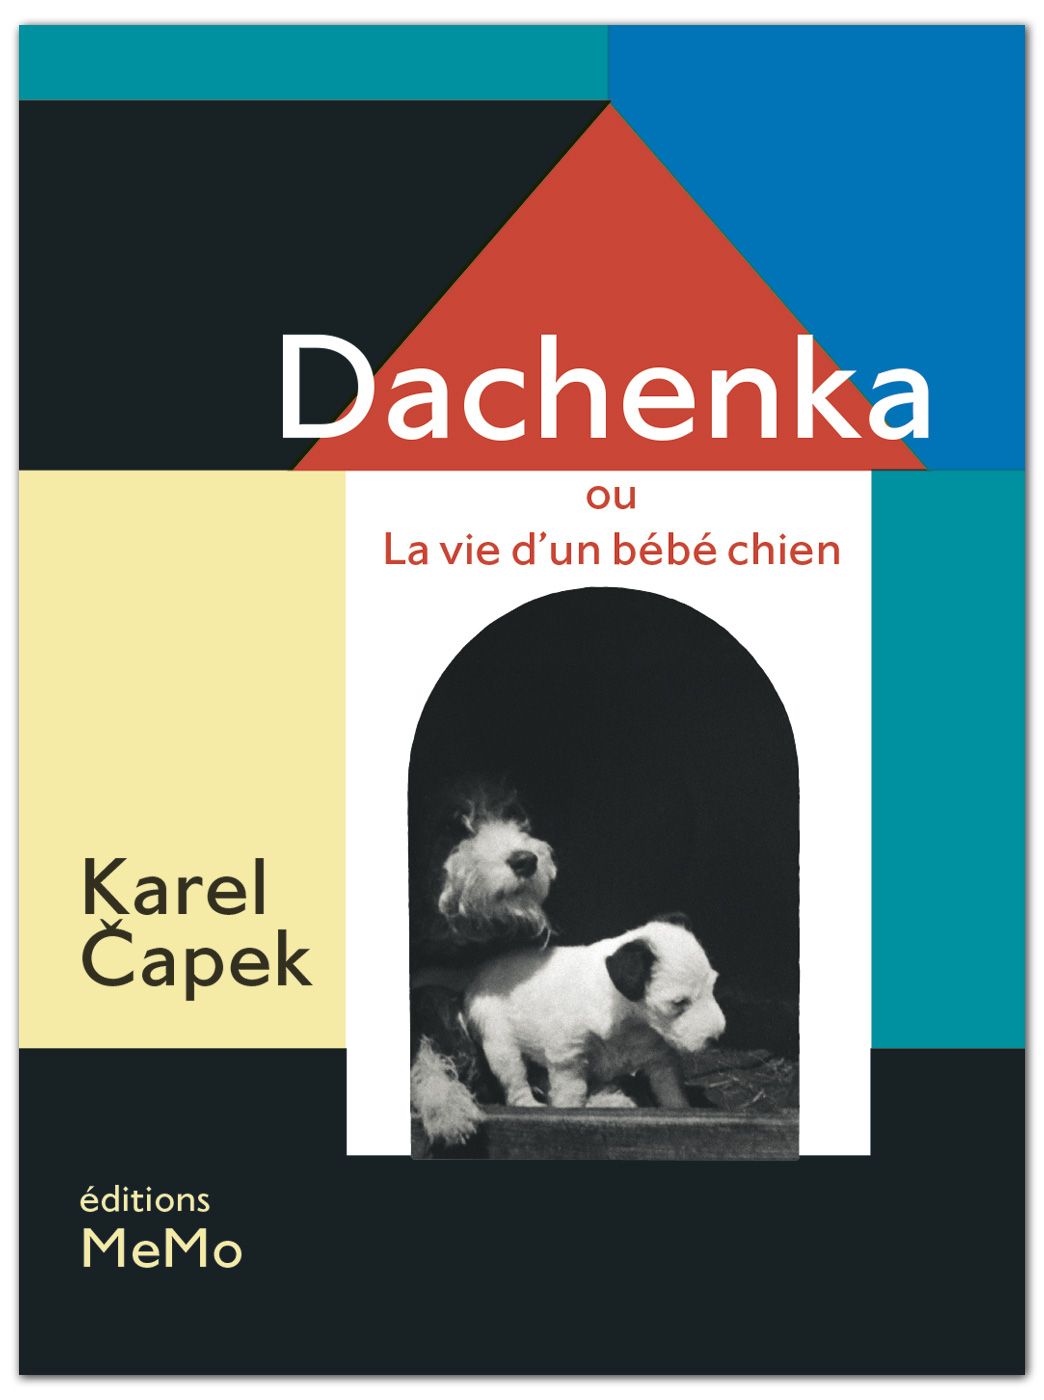 Dachenka, ou la vie d’un bébé chien